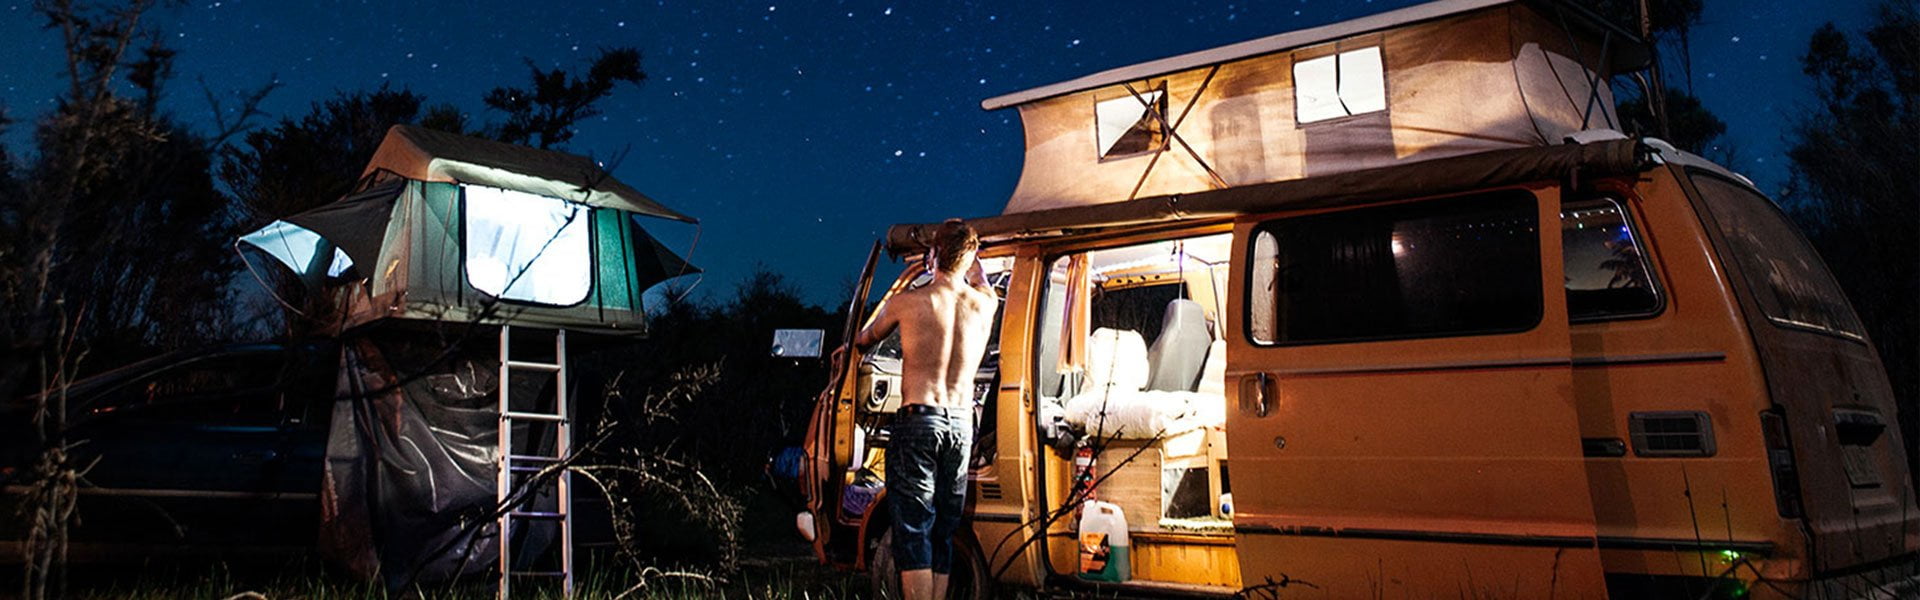 Dormire in campeggio: gli accessori - Much More Than Camping